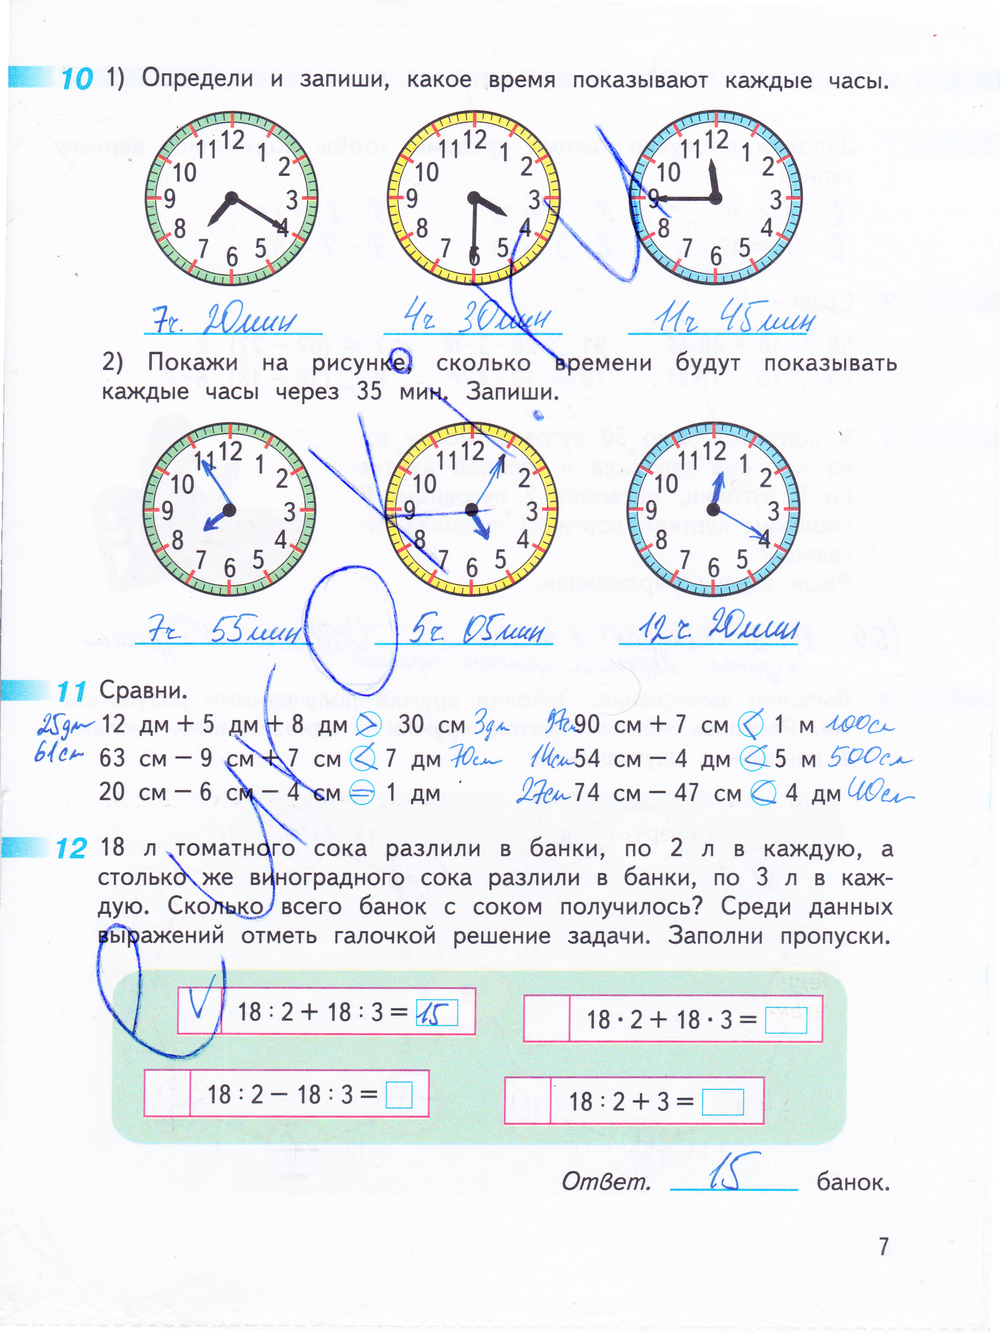 Решение задач с часами и минутами. Математика стр 7 Дорофеева рабочая тетрадь. Задание по математике часы 3 класс. Определи и запиши какое время показывают каждые часы.